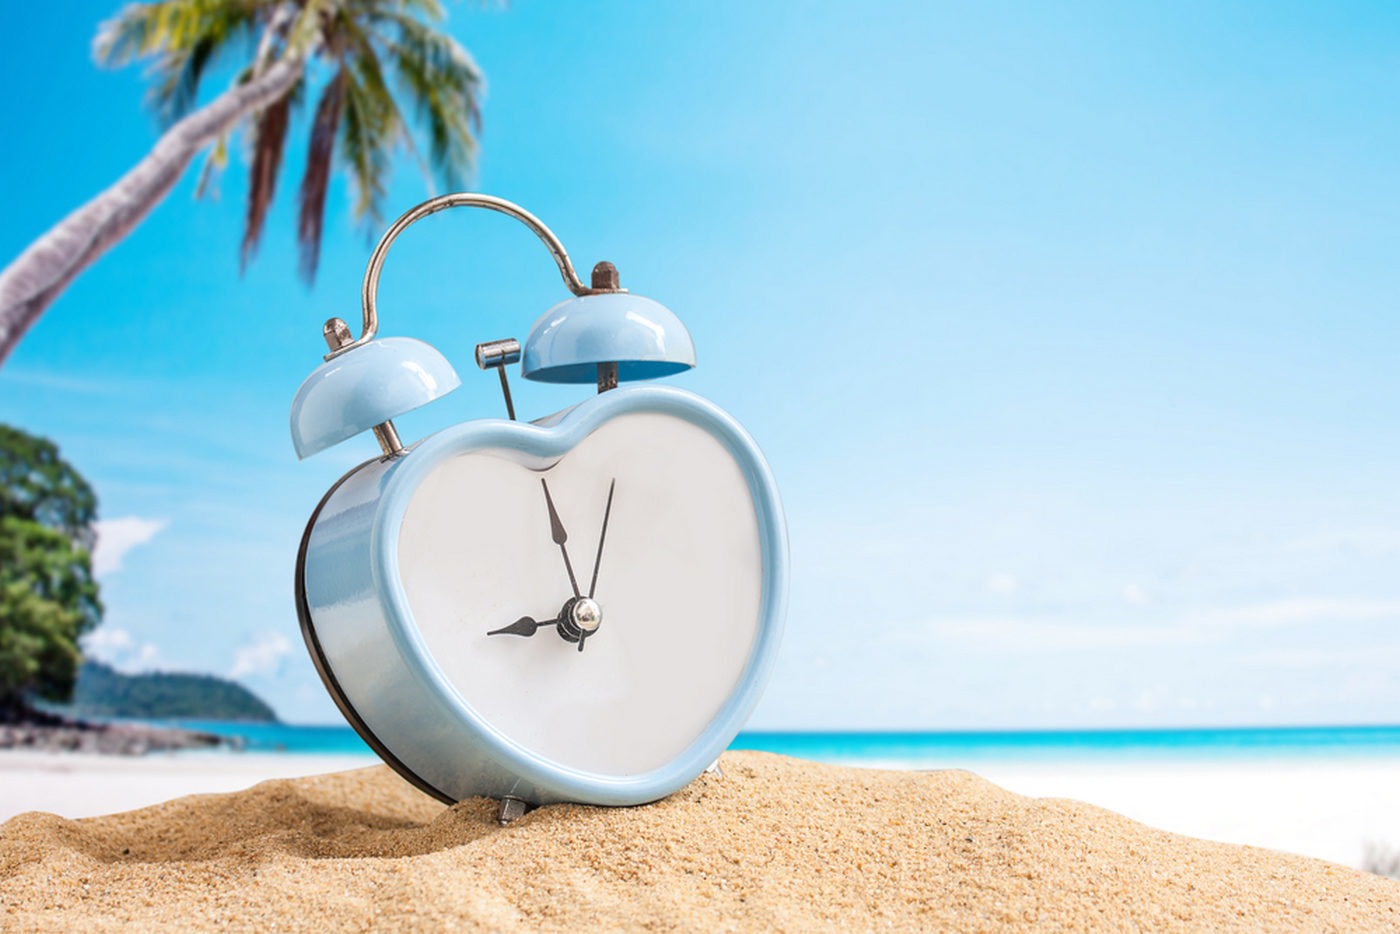 zegar budzik na plaży odmierza czas